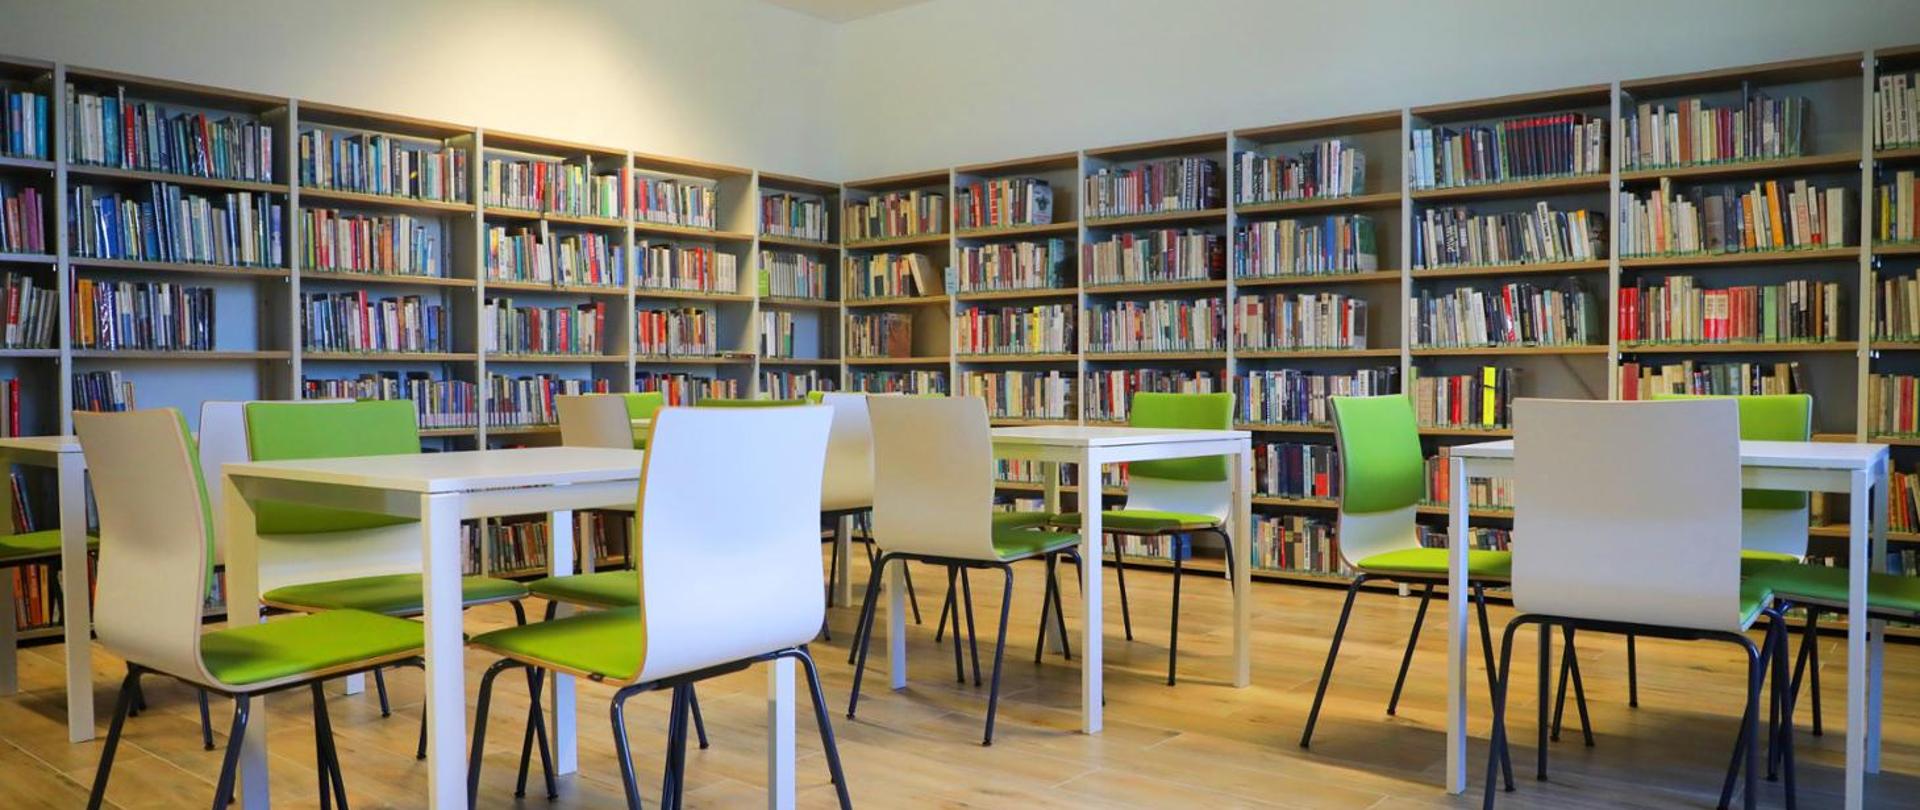 Biblioteka z półkami pełnymi książek oraz stolikami i krzesłami